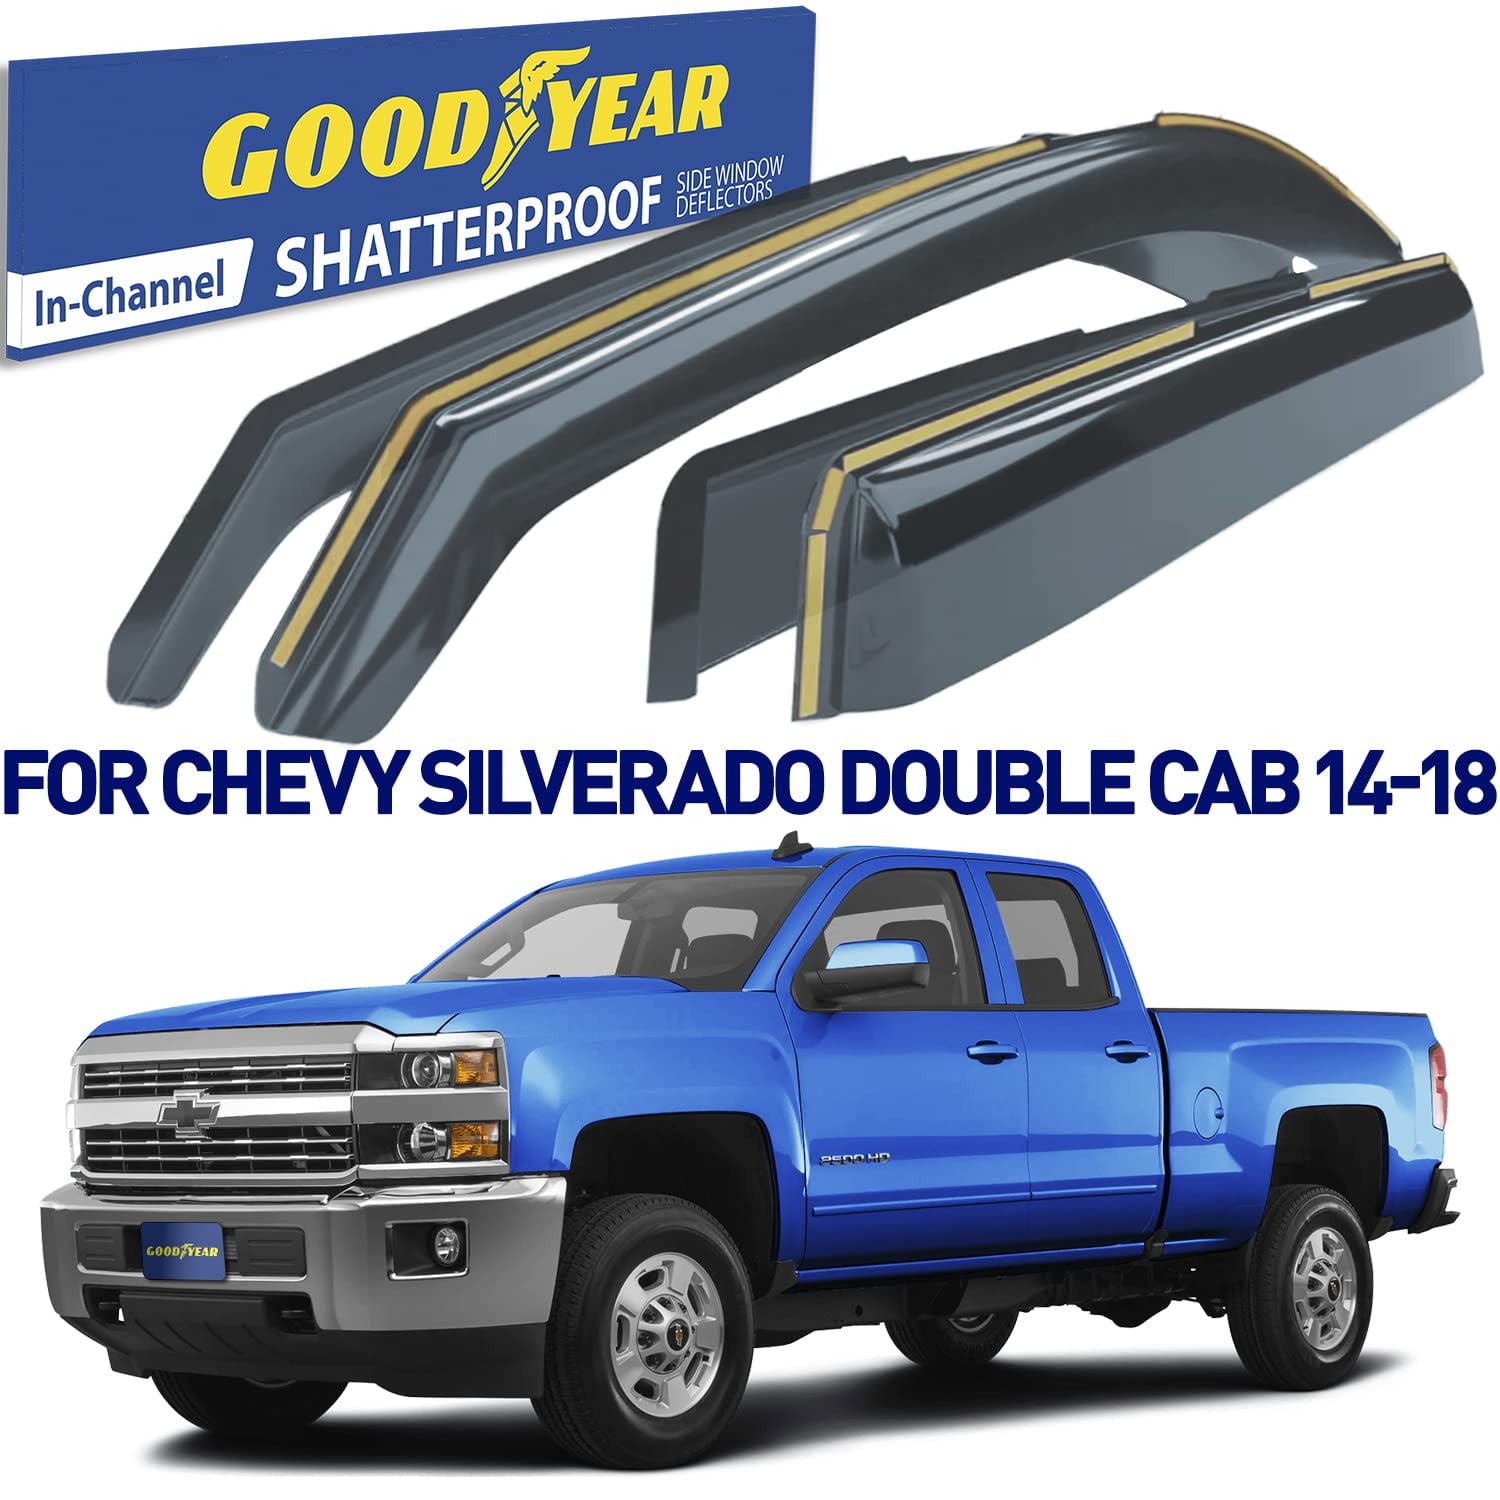 Goodyear Shatterproof in-Channel Window Deflectors for Trucks